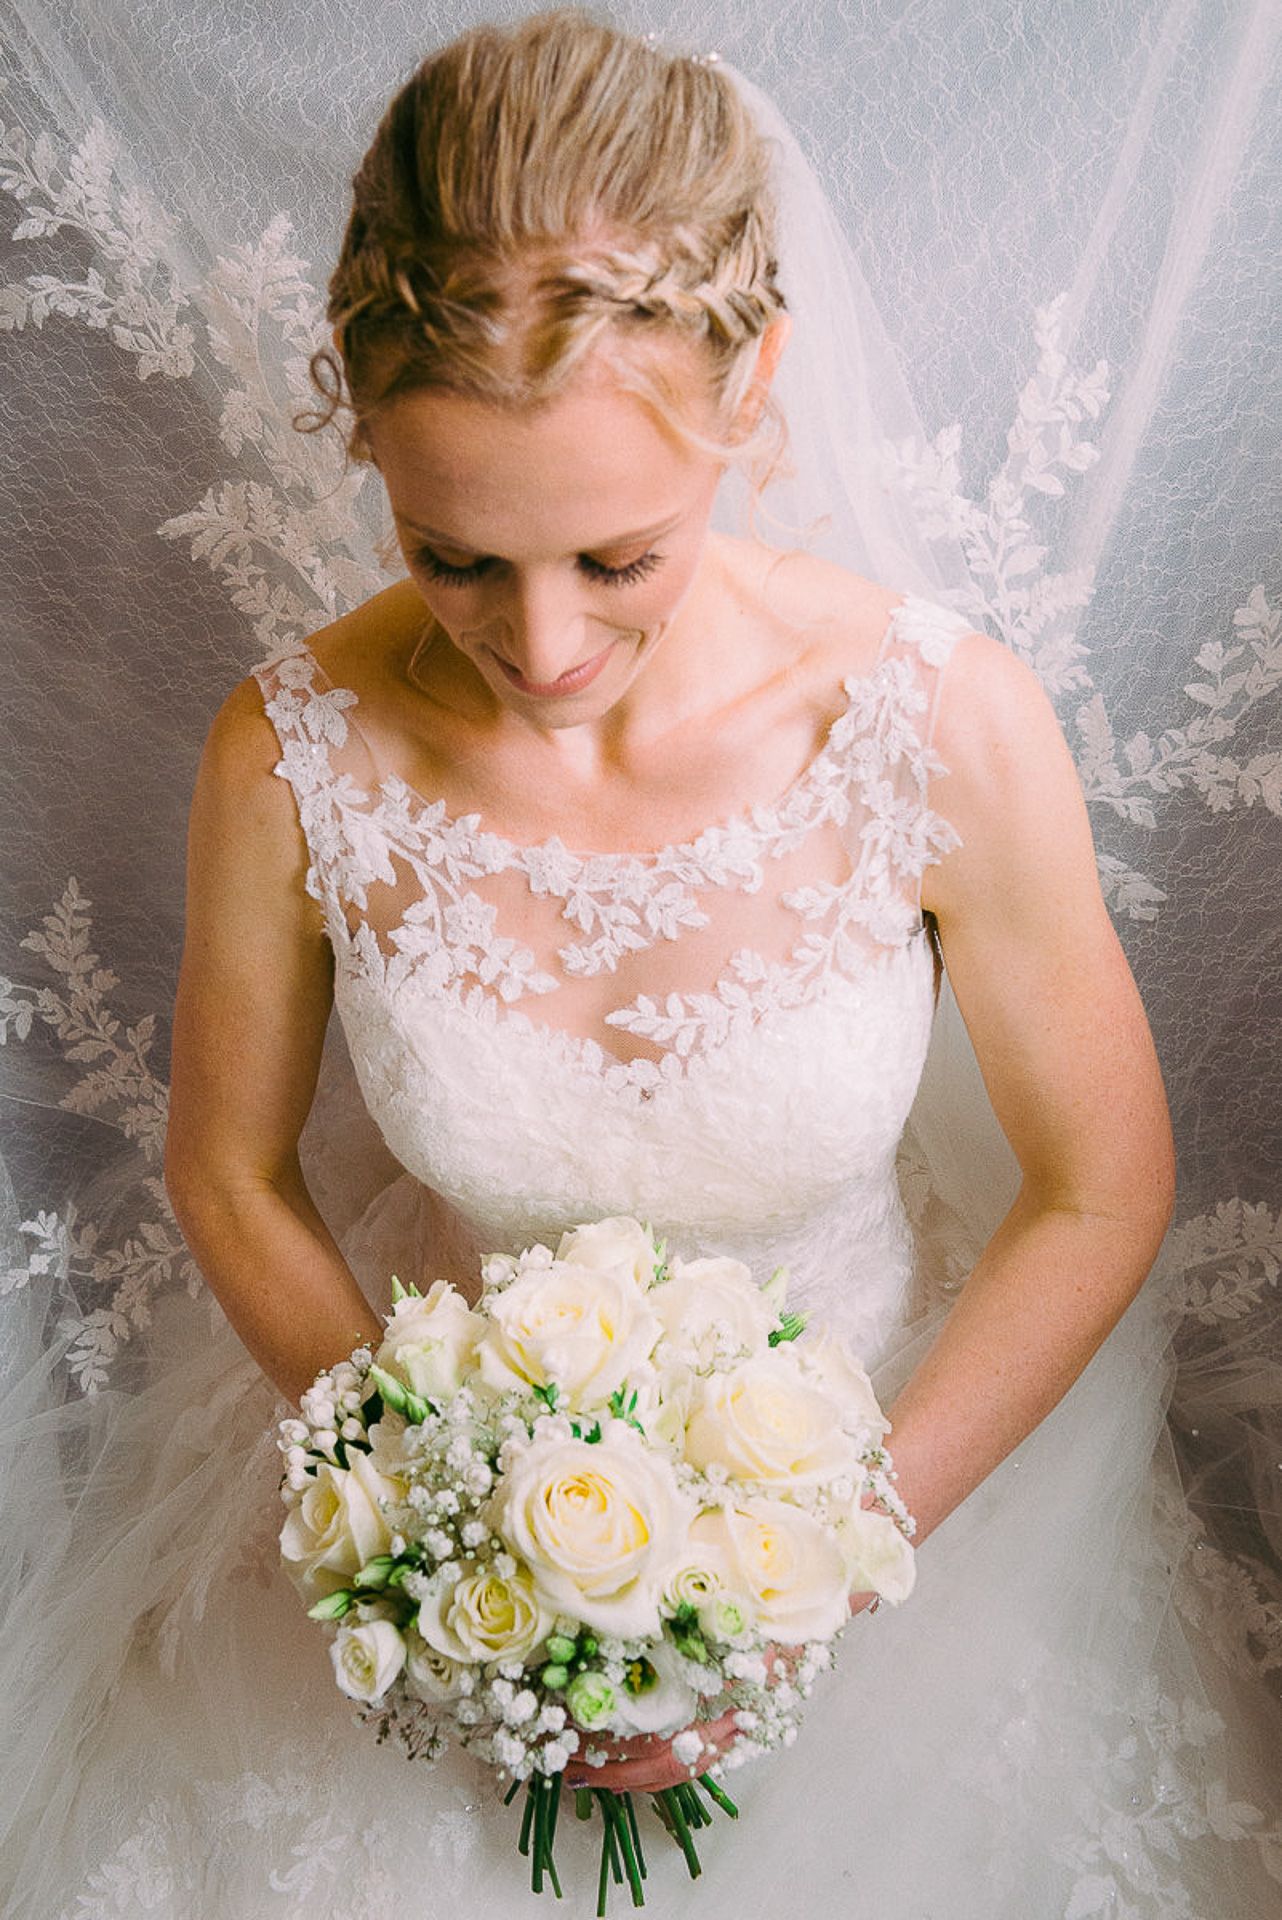 bride is kneeling and looking at her flowers